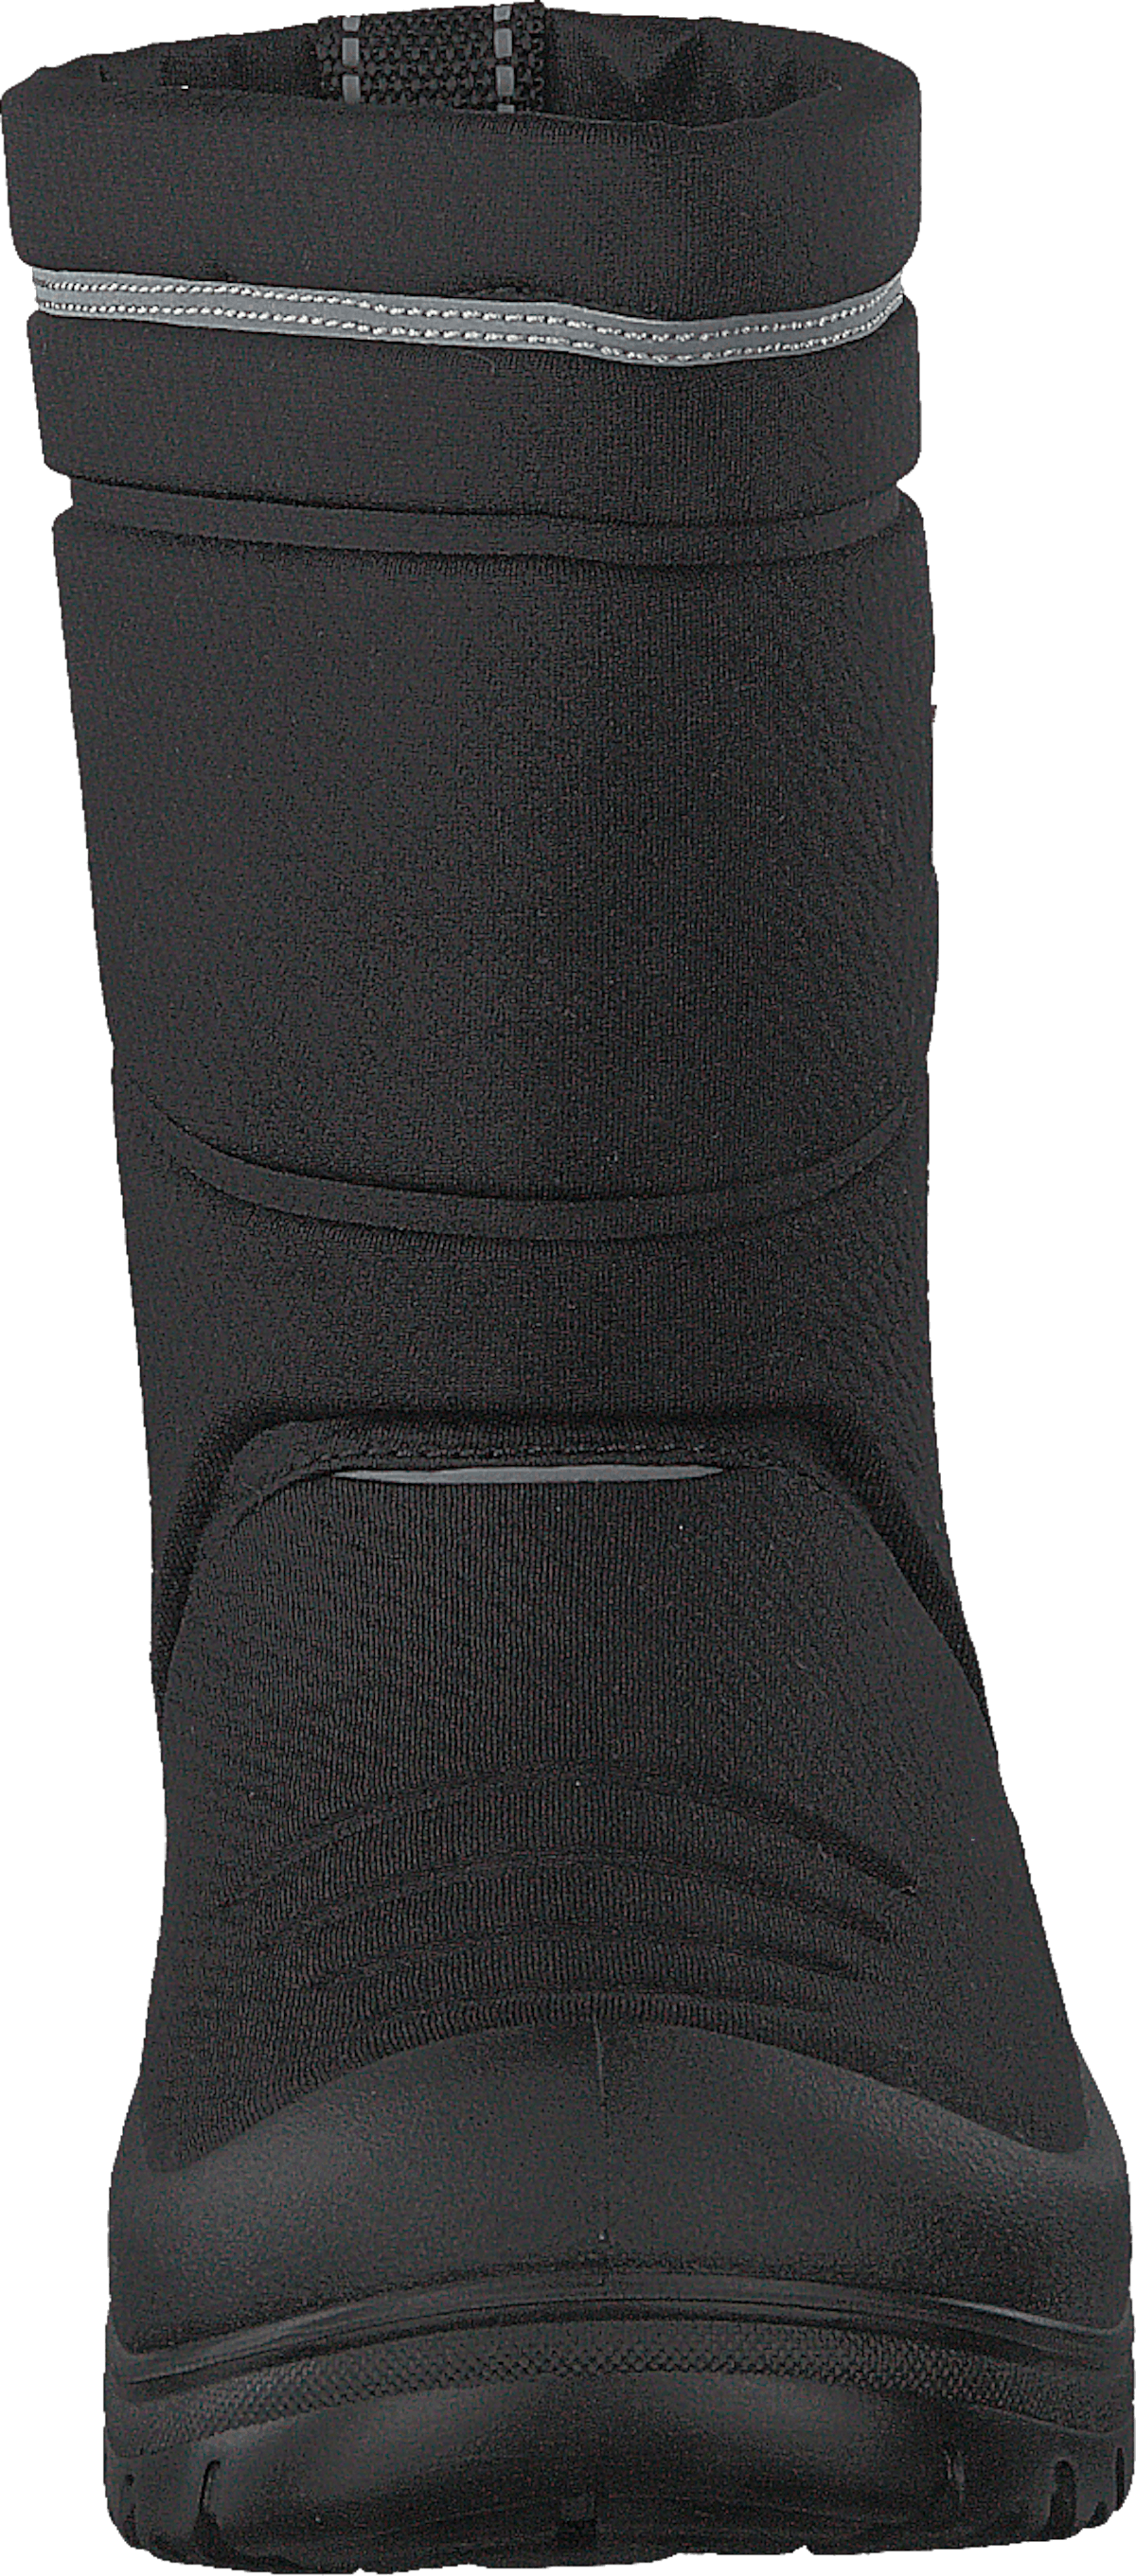 414-7001 Waterproof Warm Lined Black